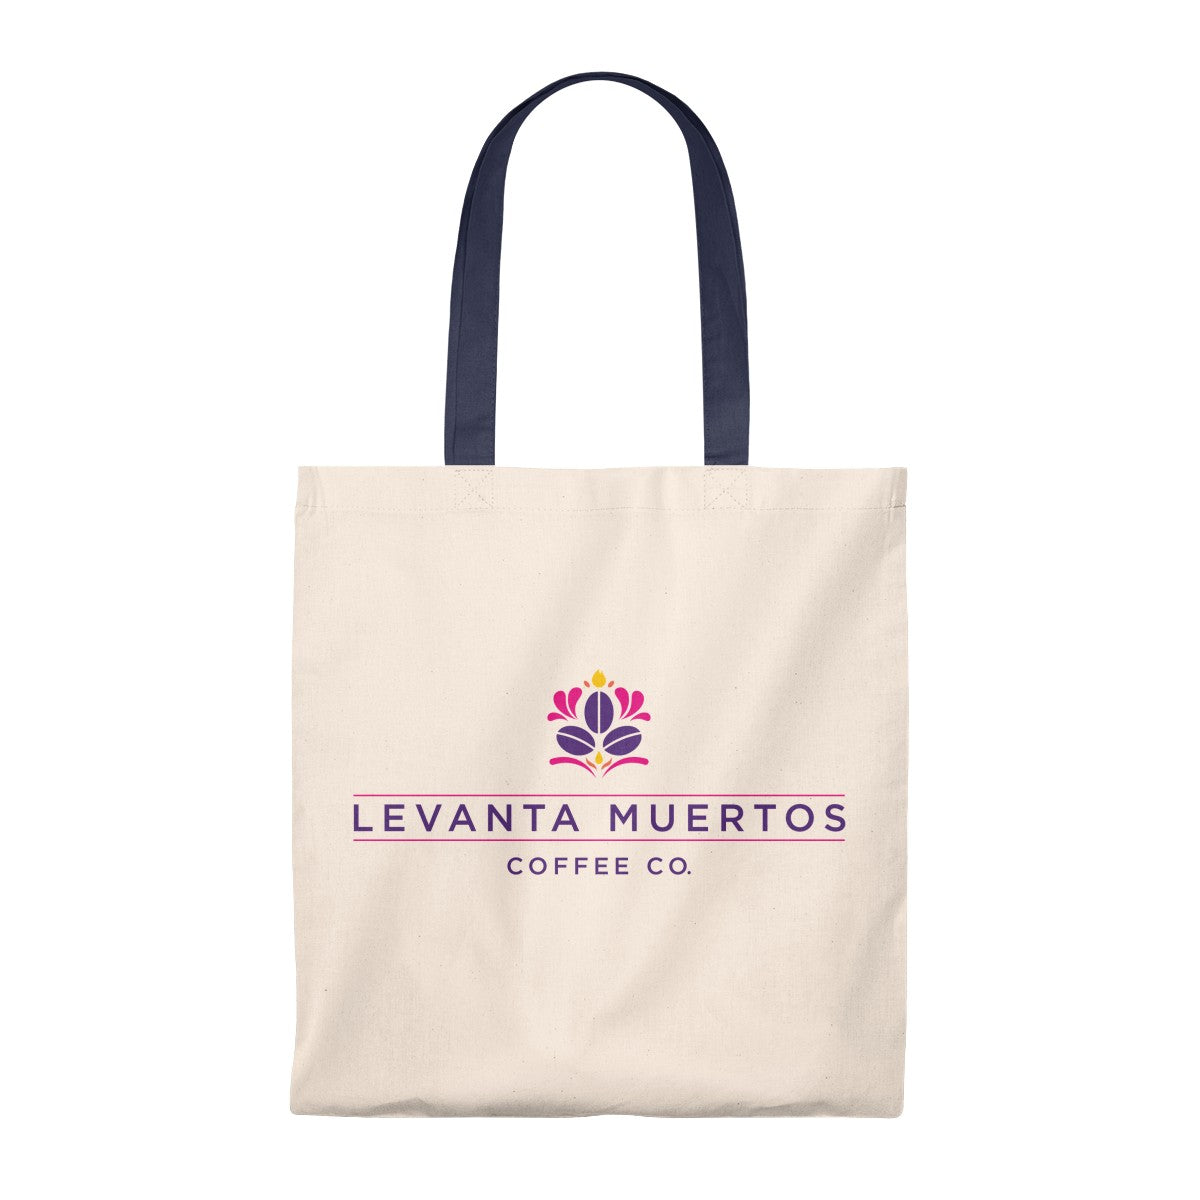 Levanta Muertos Coffee Co. Tote Bag - Vintage